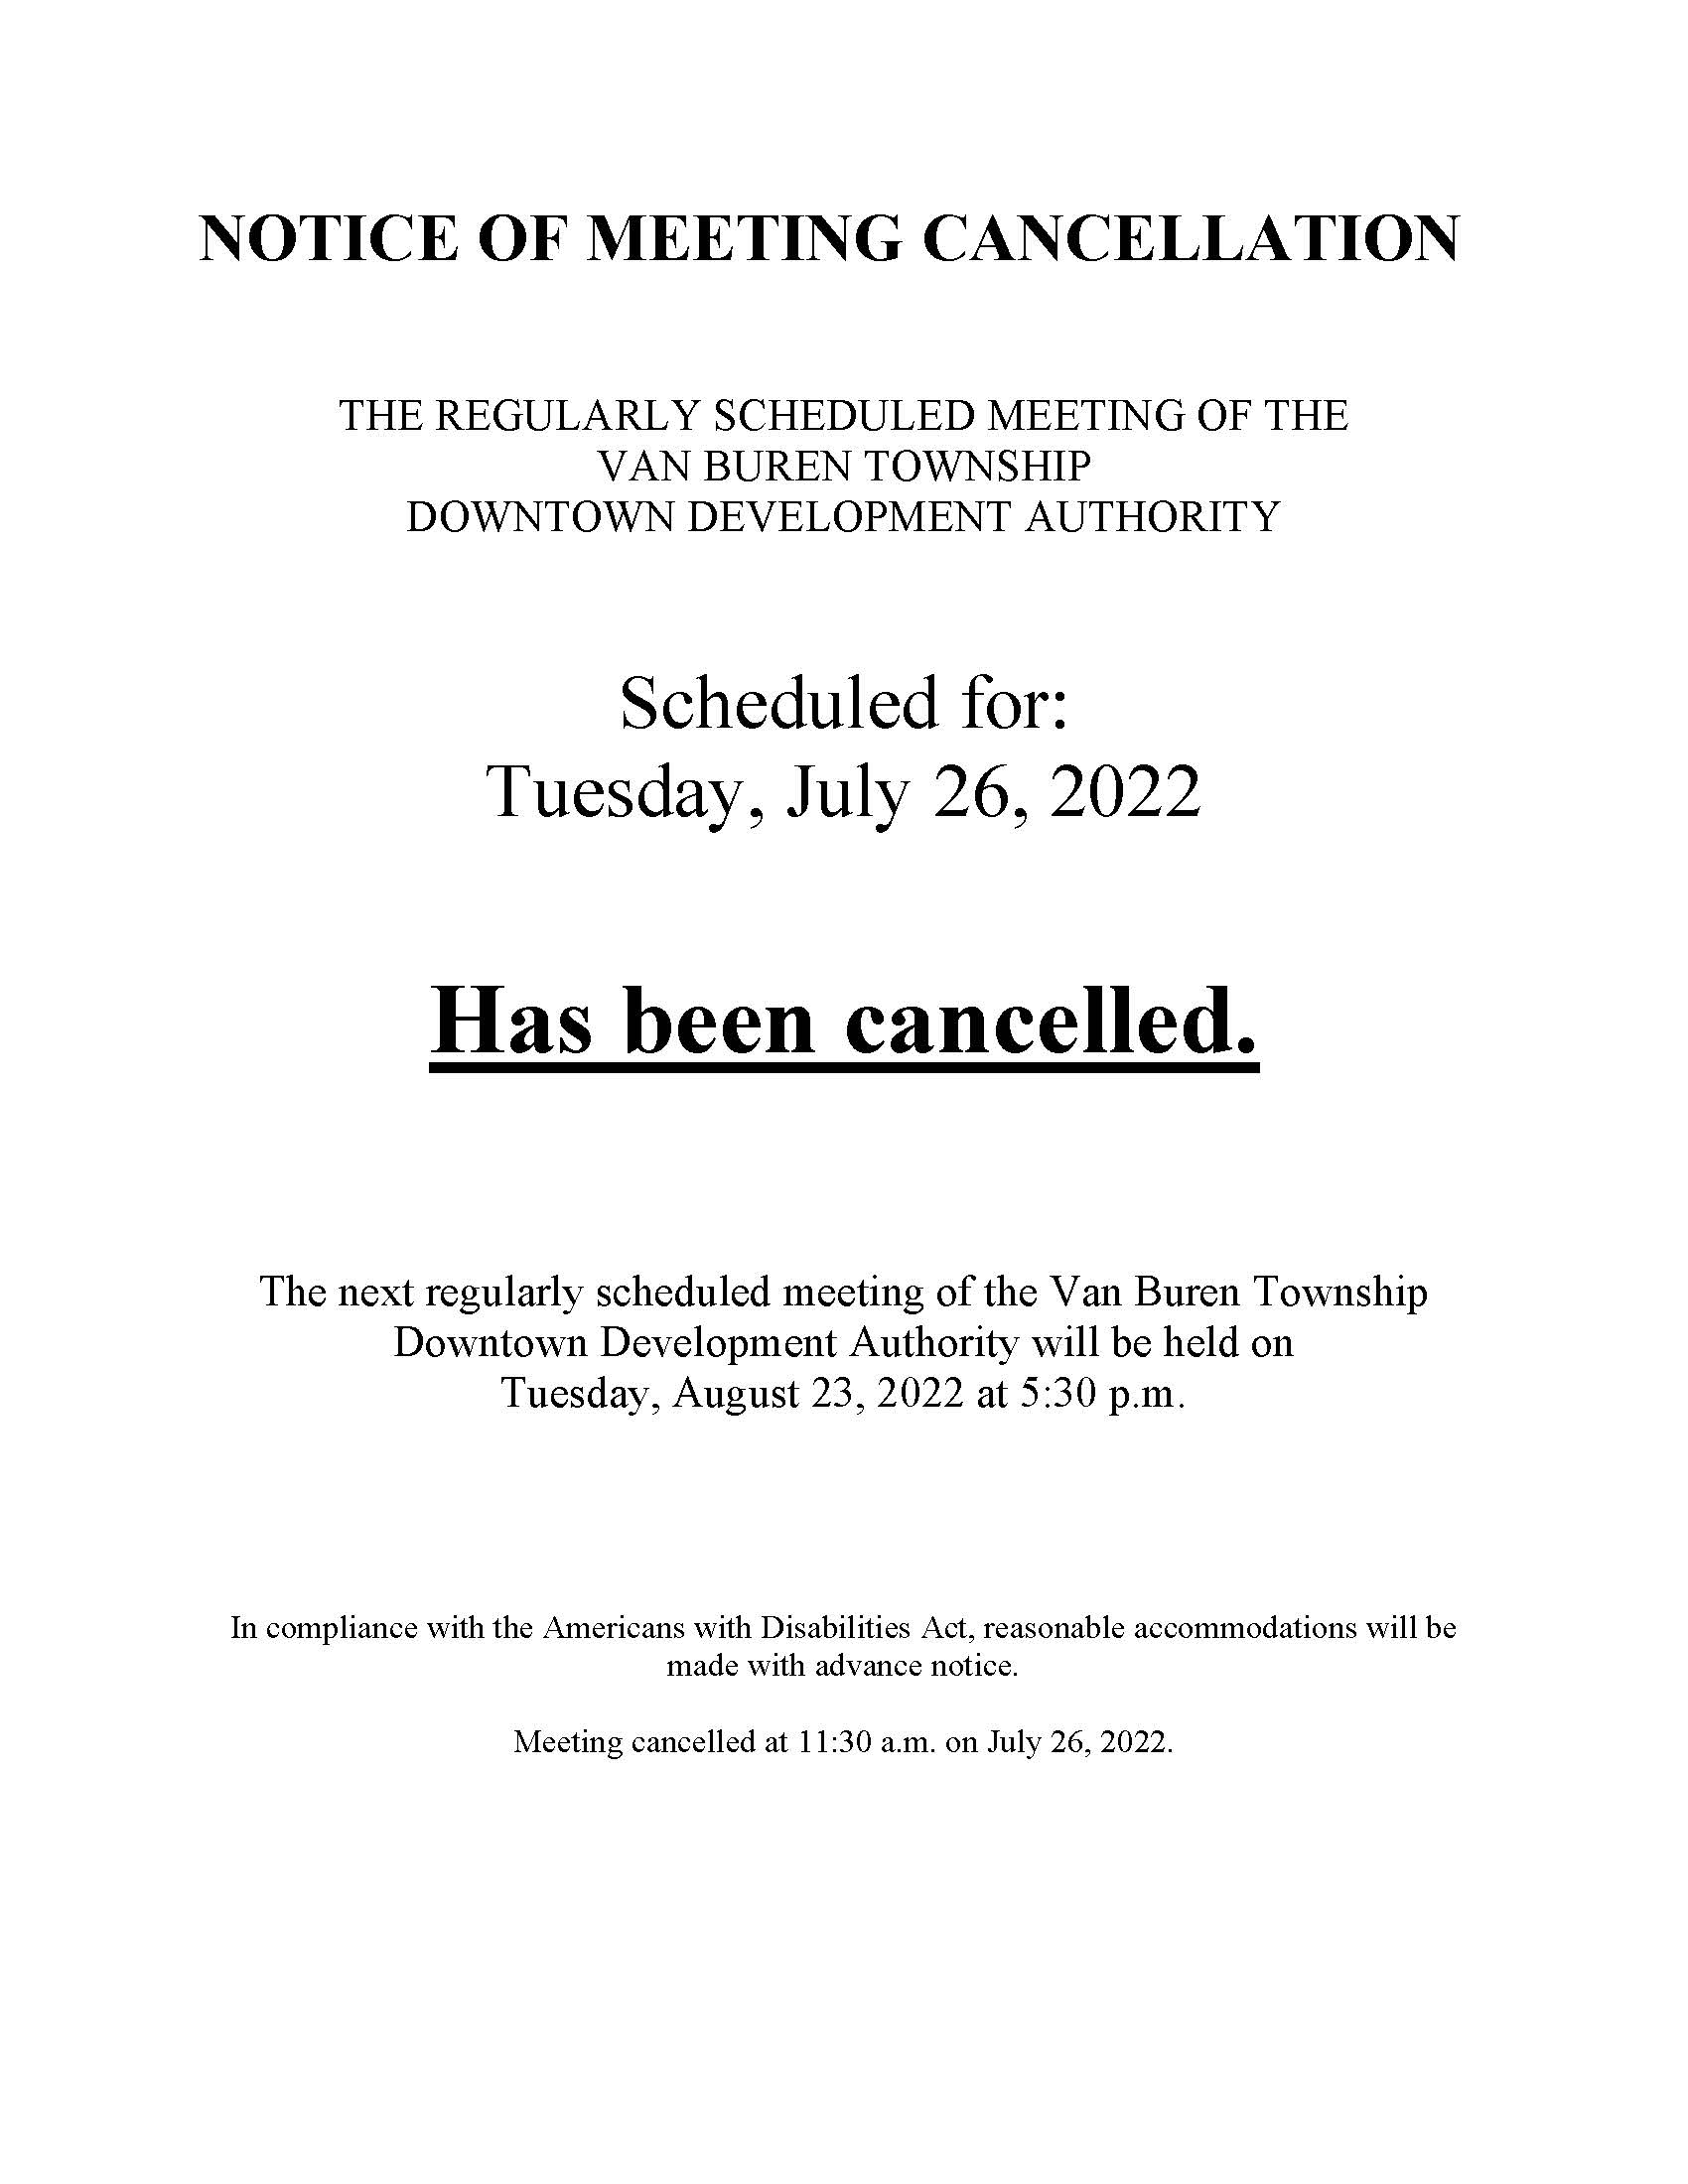 DDA July 26 2022 cancellation notice